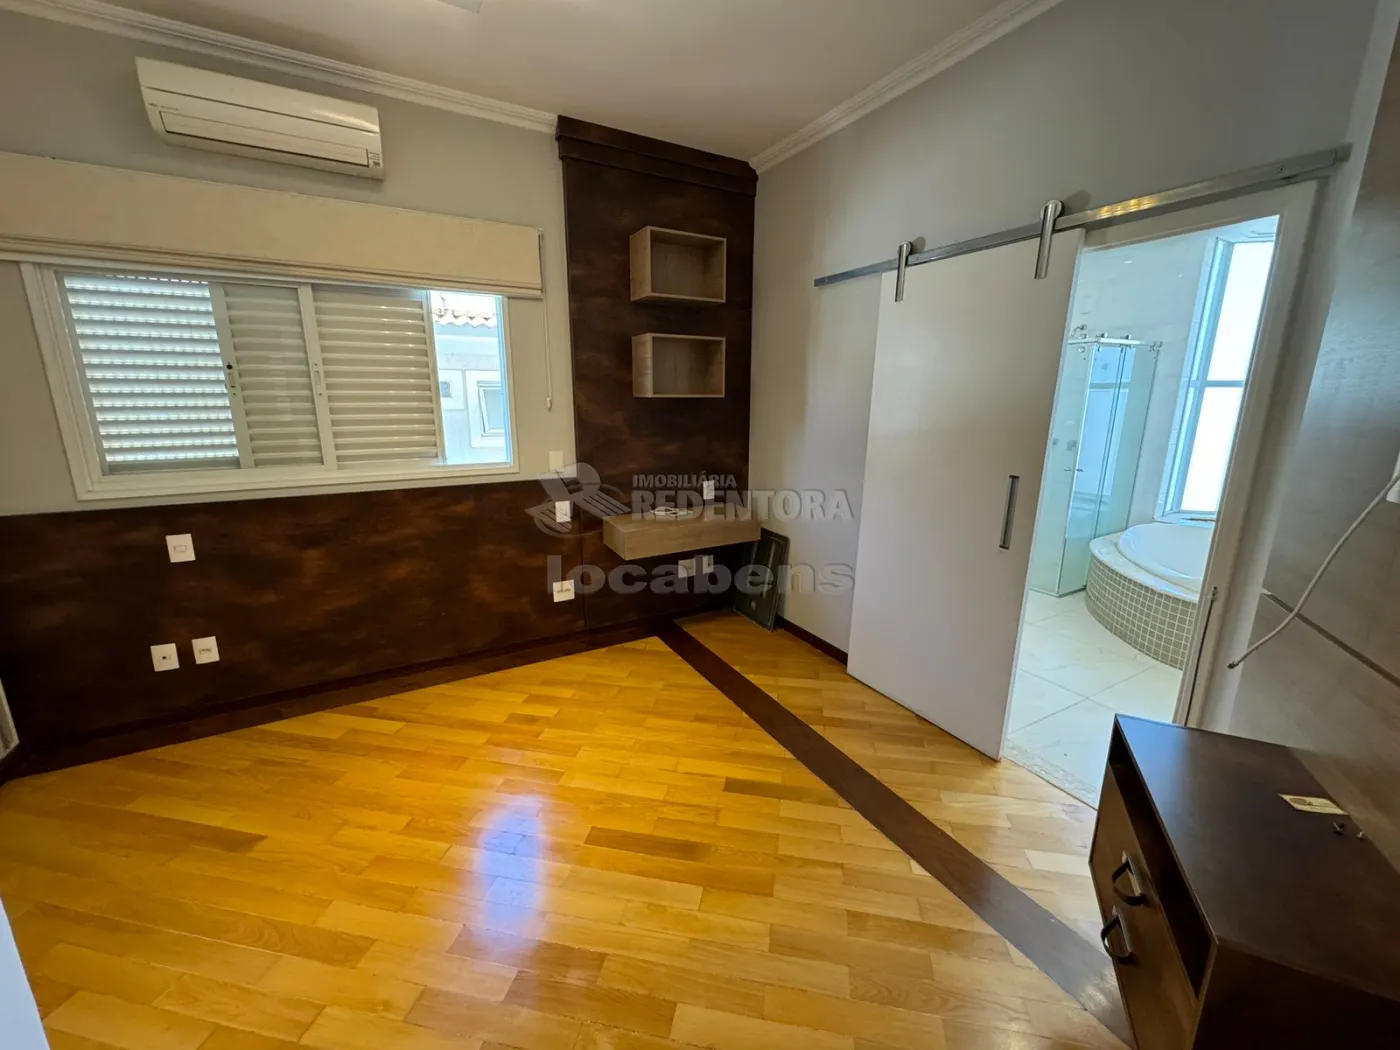 Comprar Casa / Condomínio em São José do Rio Preto apenas R$ 2.500.000,00 - Foto 15